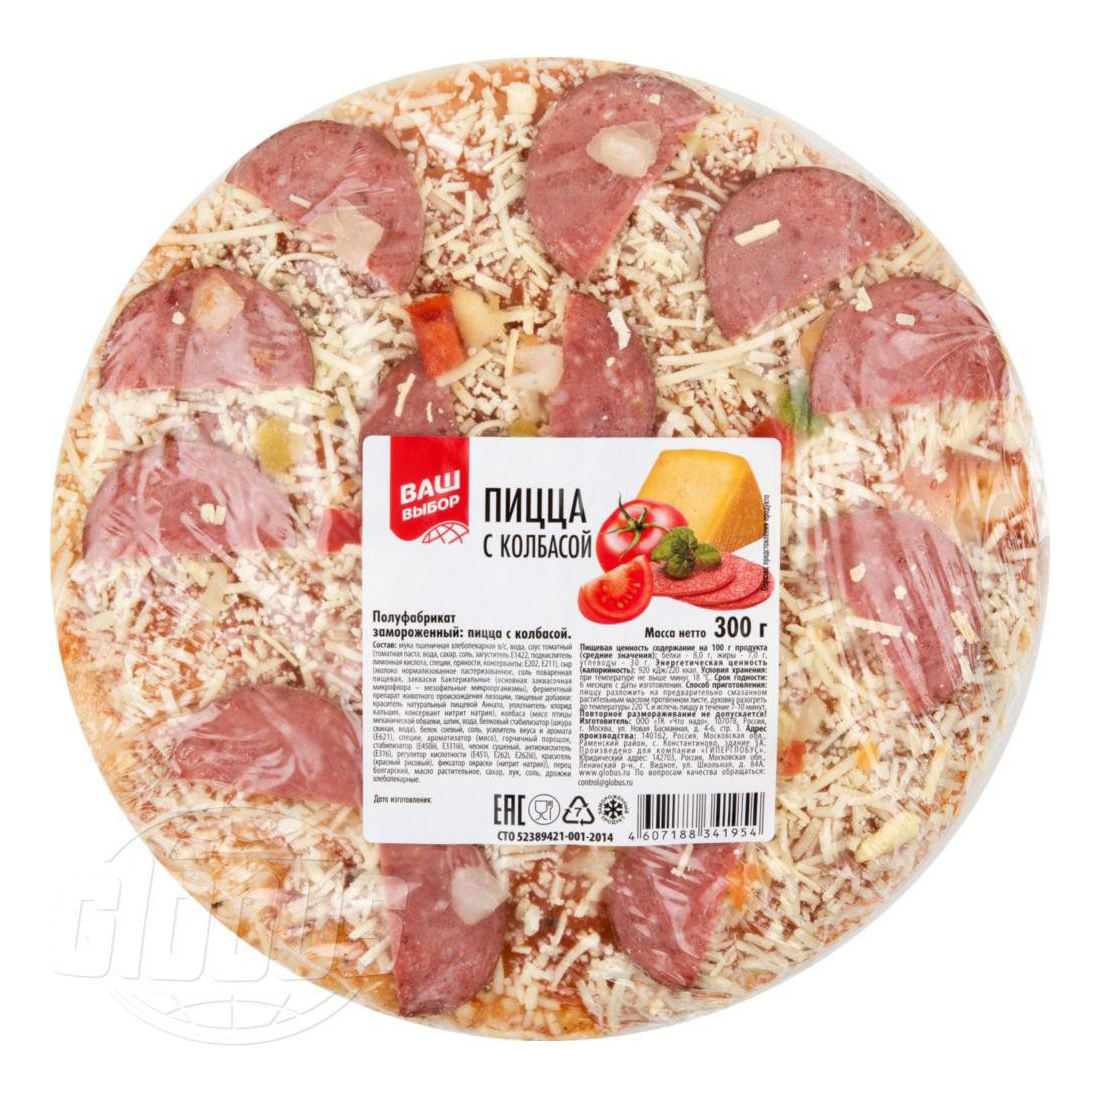 Пицца Ваш выбор с колбасой замороженная 300 г